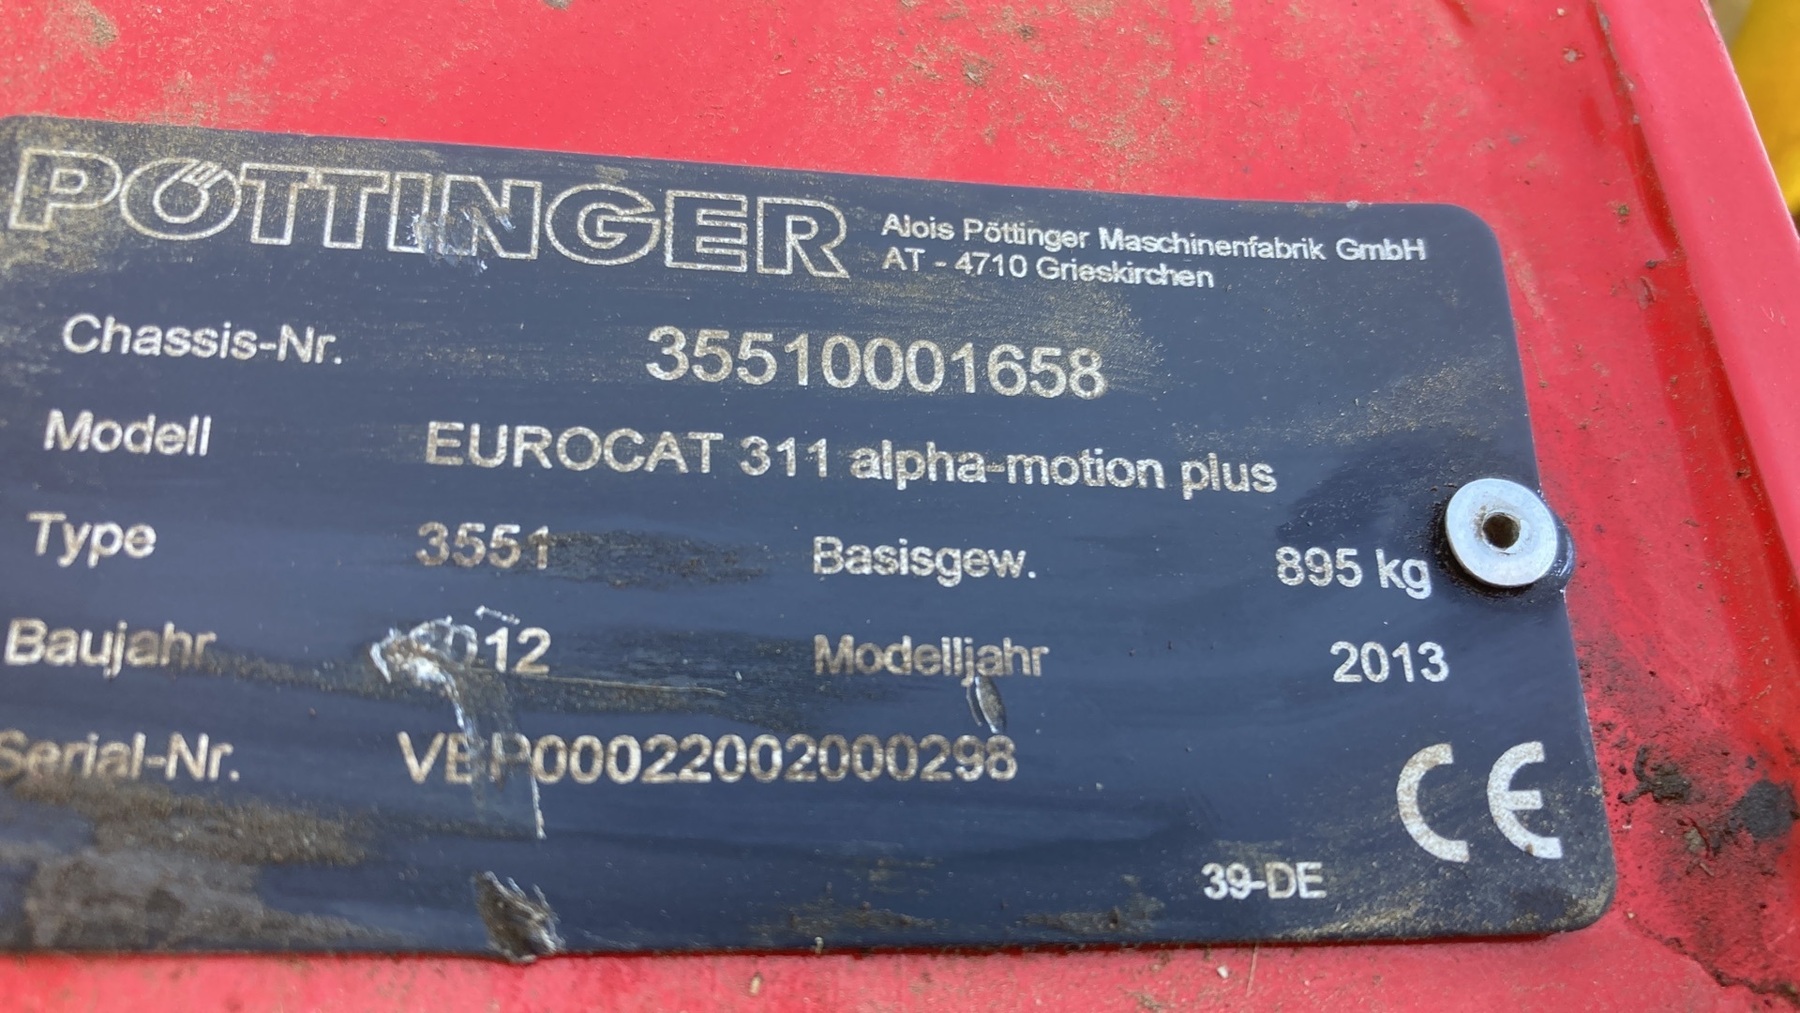 PÃ¶ttinger Eurocat 311 Alphamotion Plus 65300678243702636 © GM Bilder